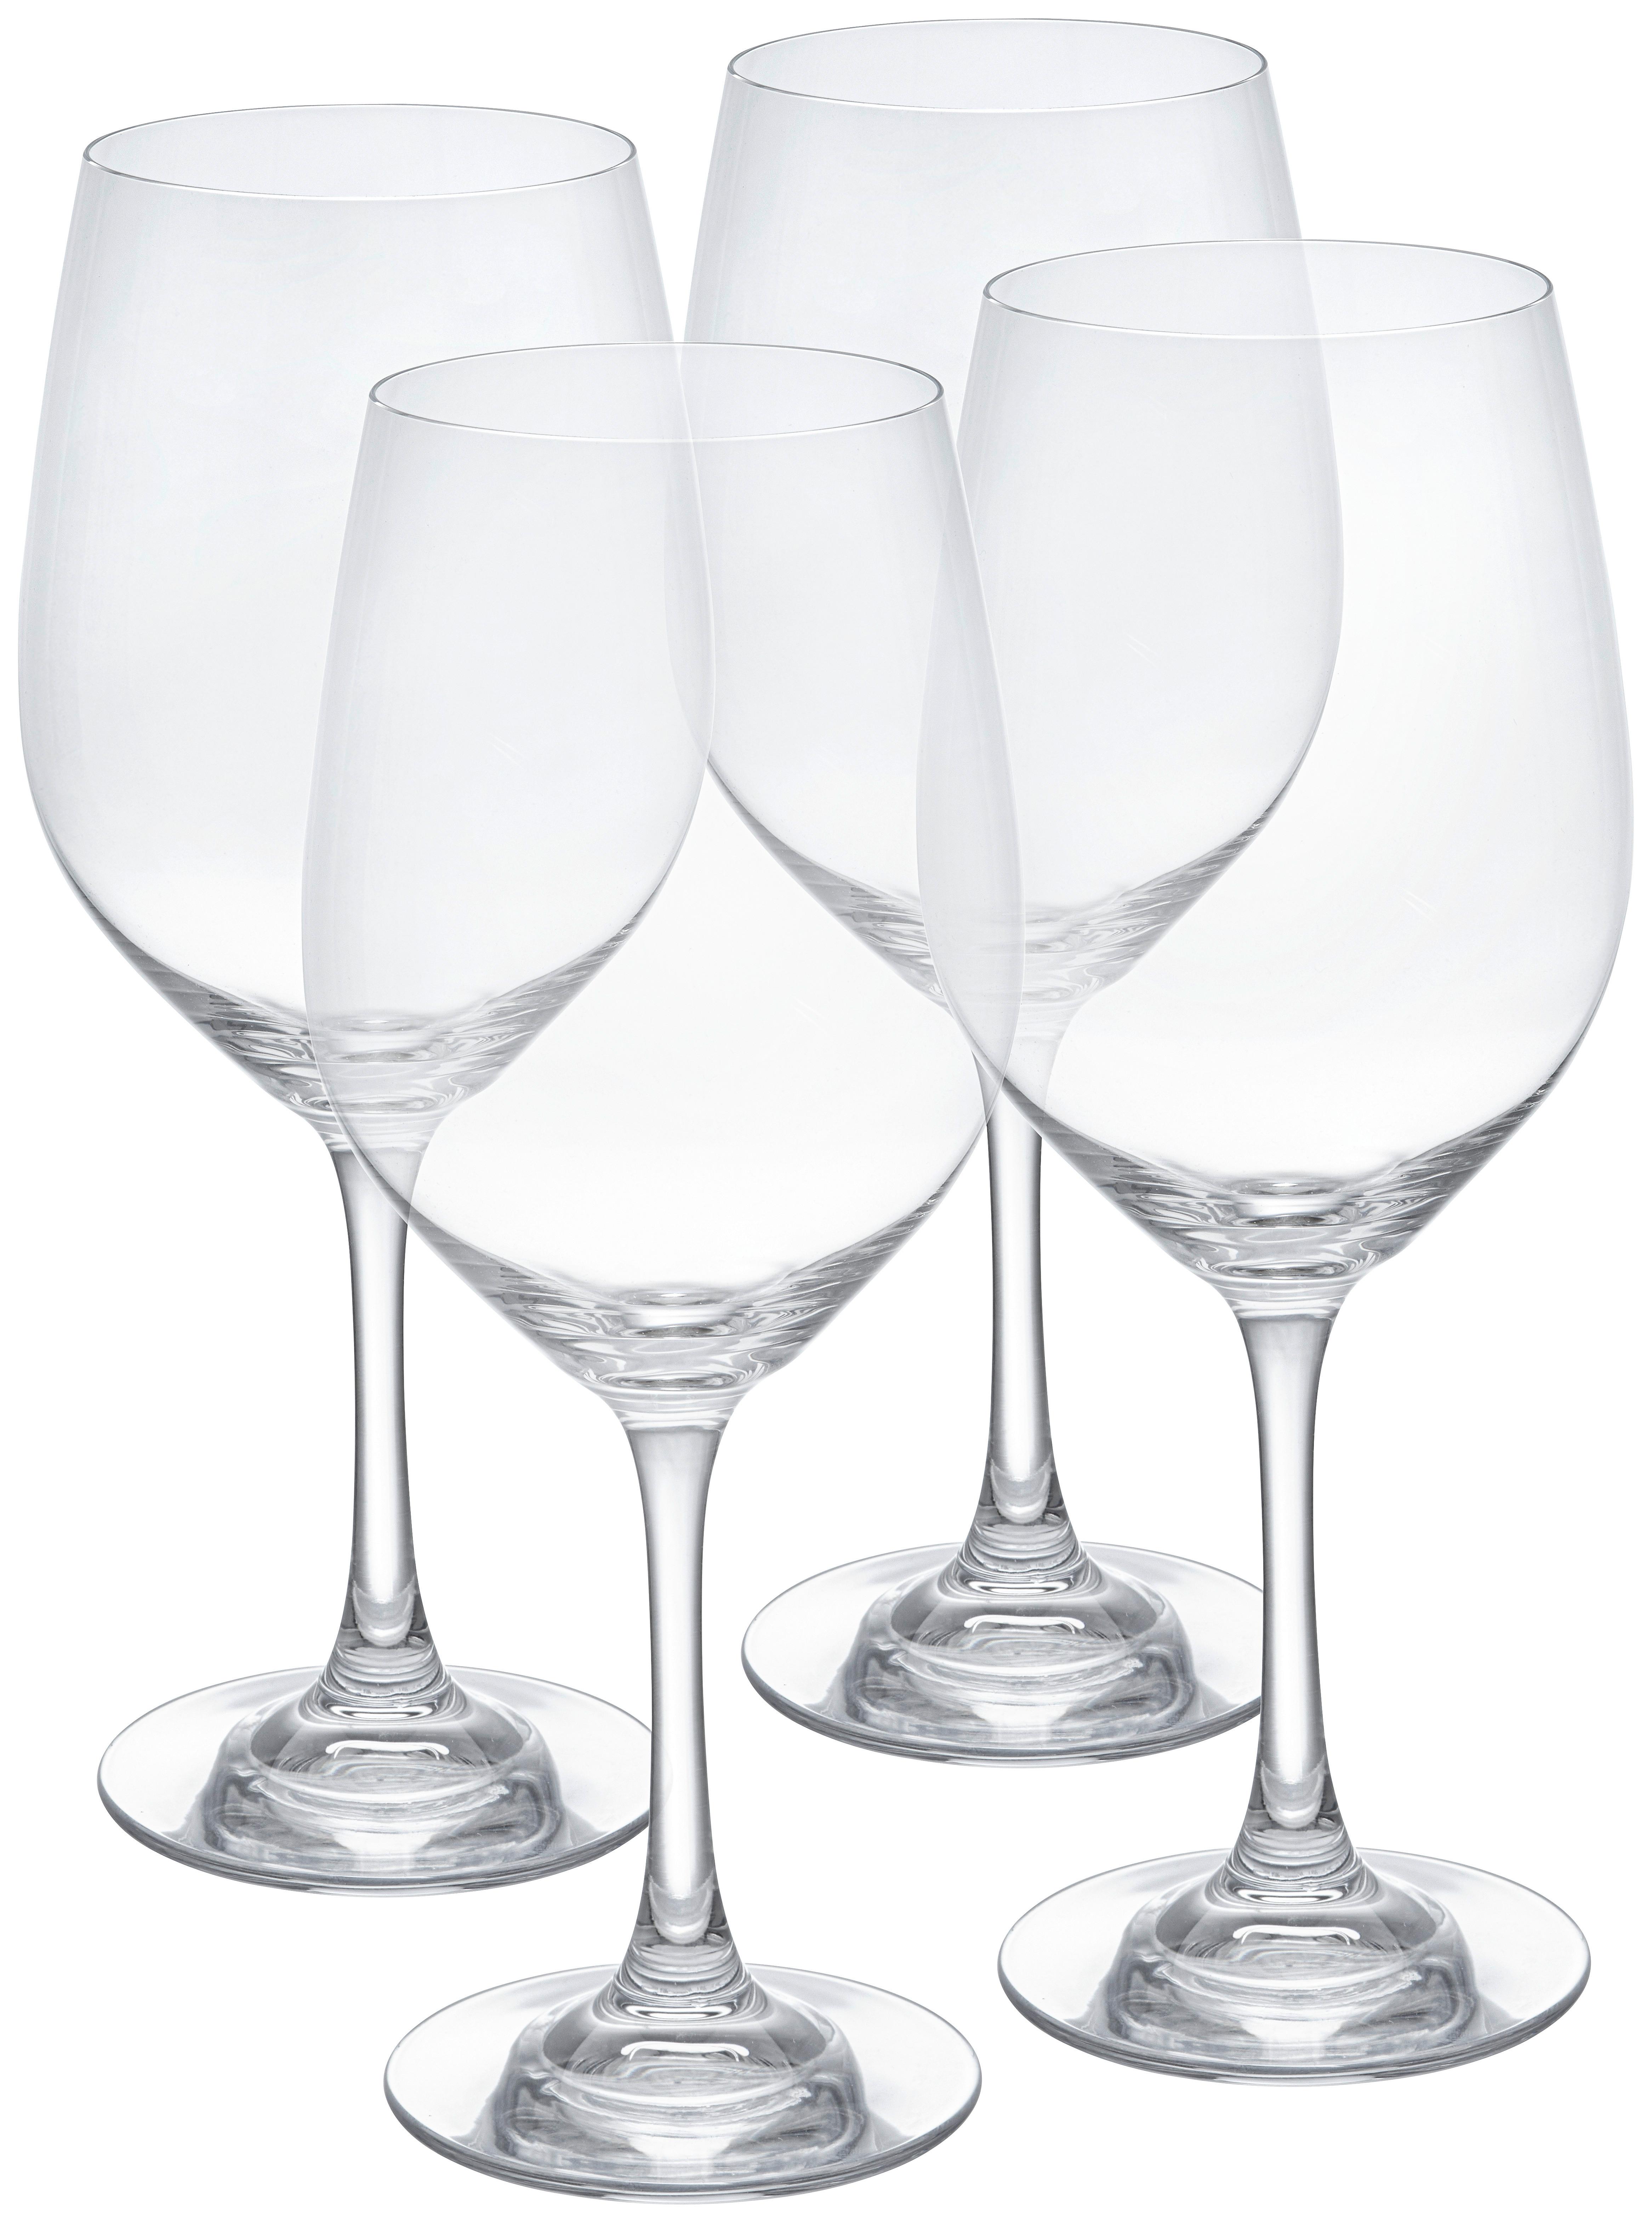 Gläserset Winelovers, 4-teilig - Klar, MODERN, Glas (9,2/22,6/9,2cm) - Spiegelau